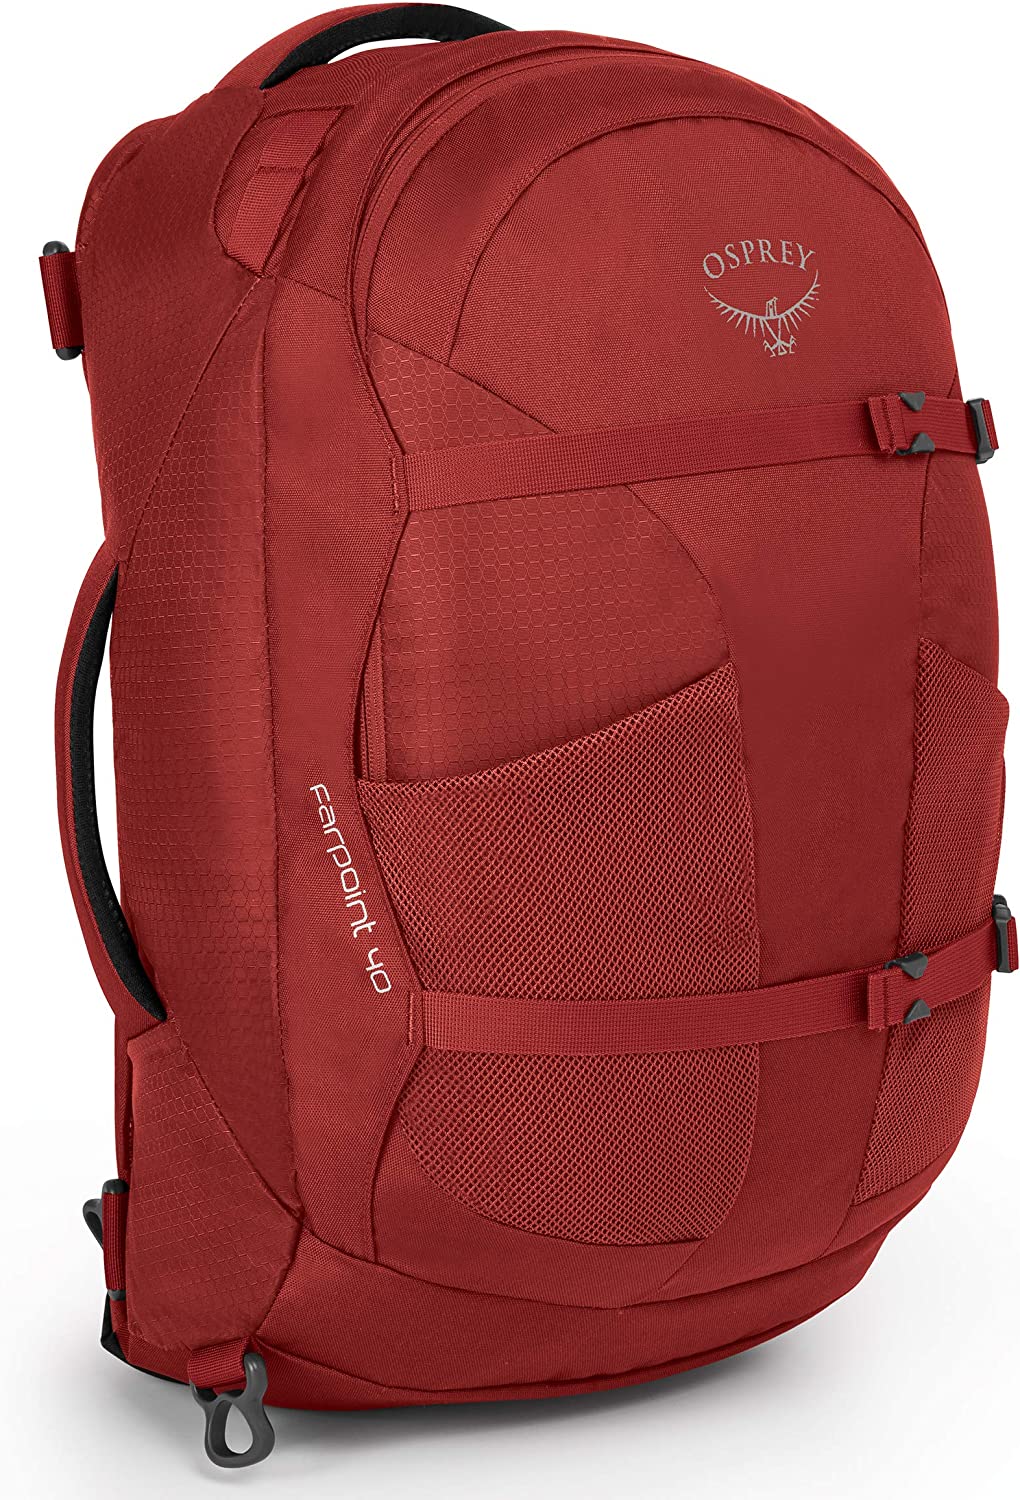 best travel backpacks for seniors